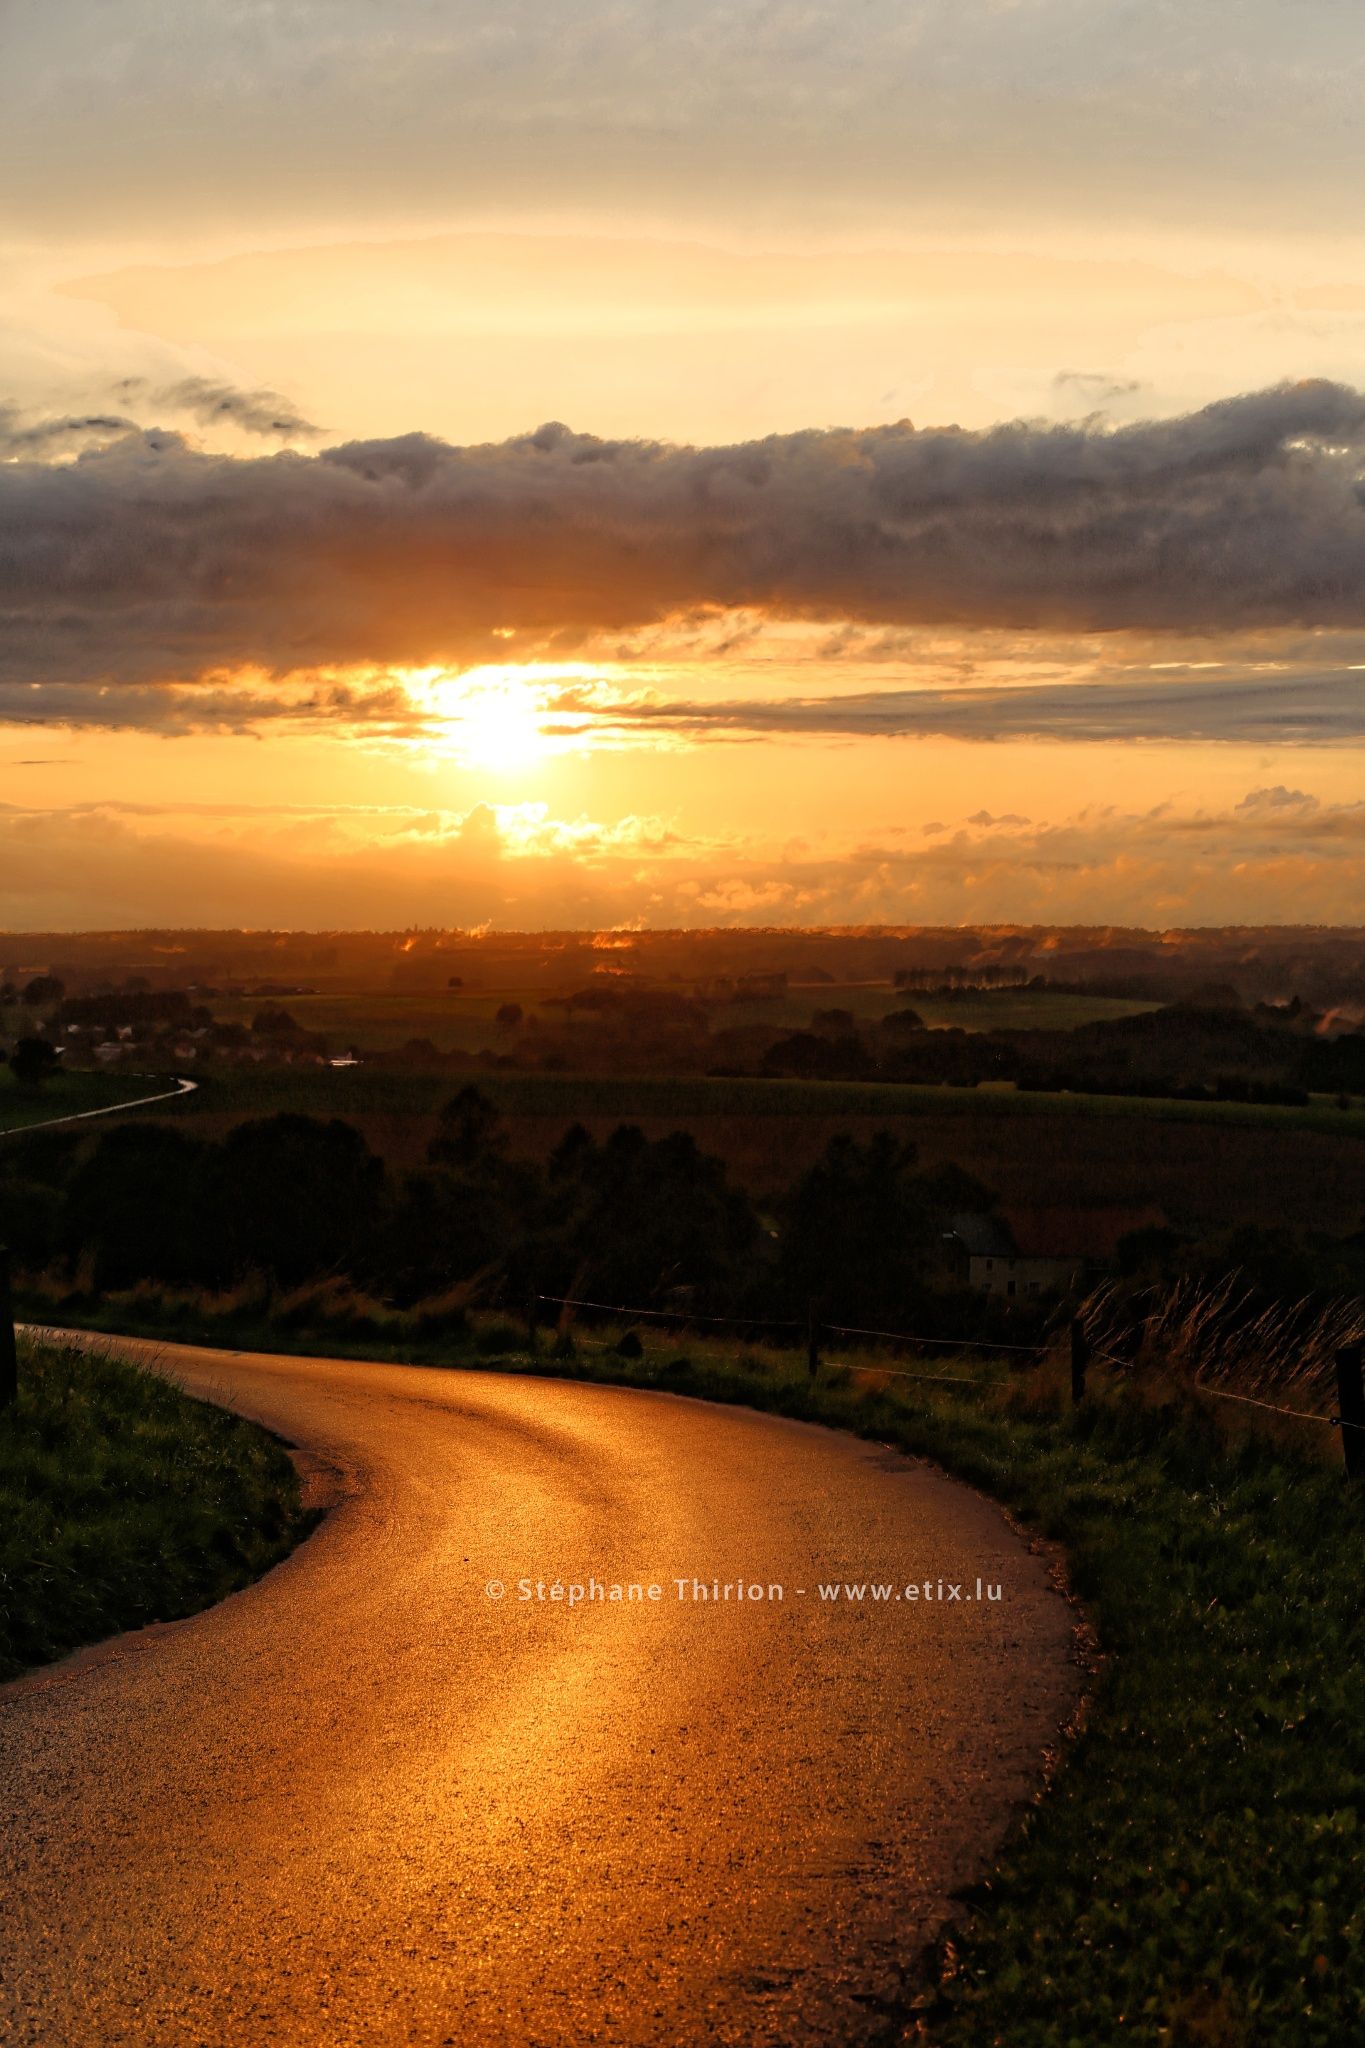 Sunset on the road / Coucher de soleil sur la route by Stéphane ...